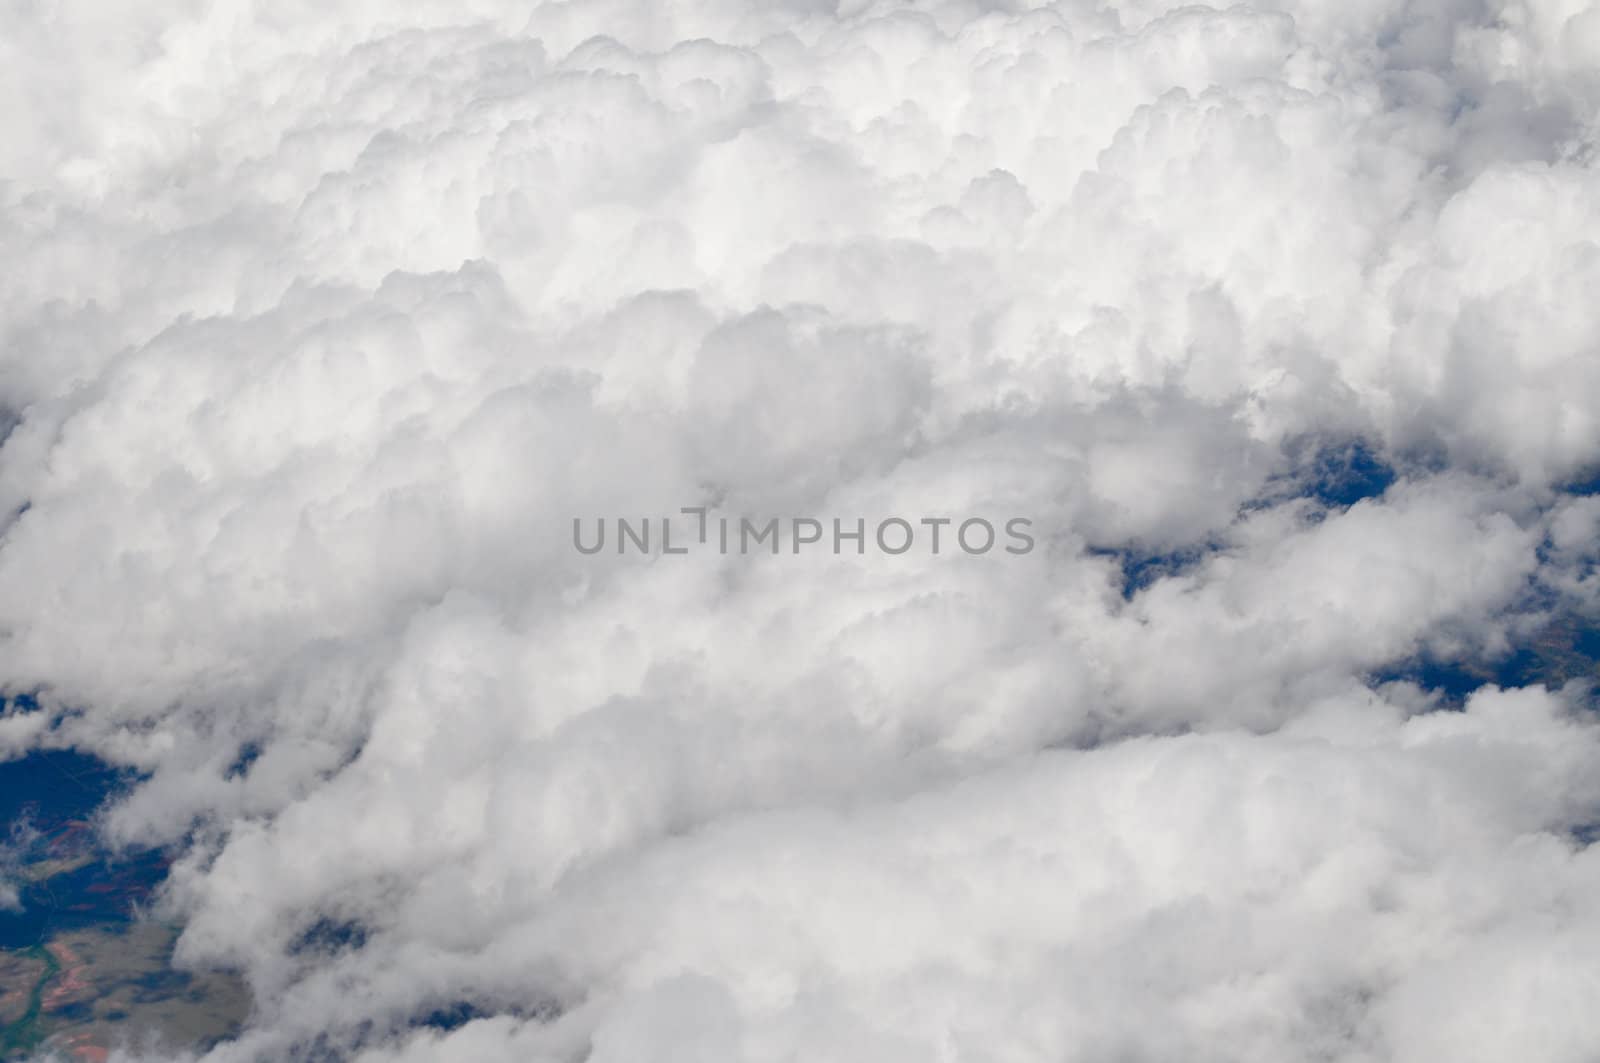 Cloudy skies by RefocusPhoto